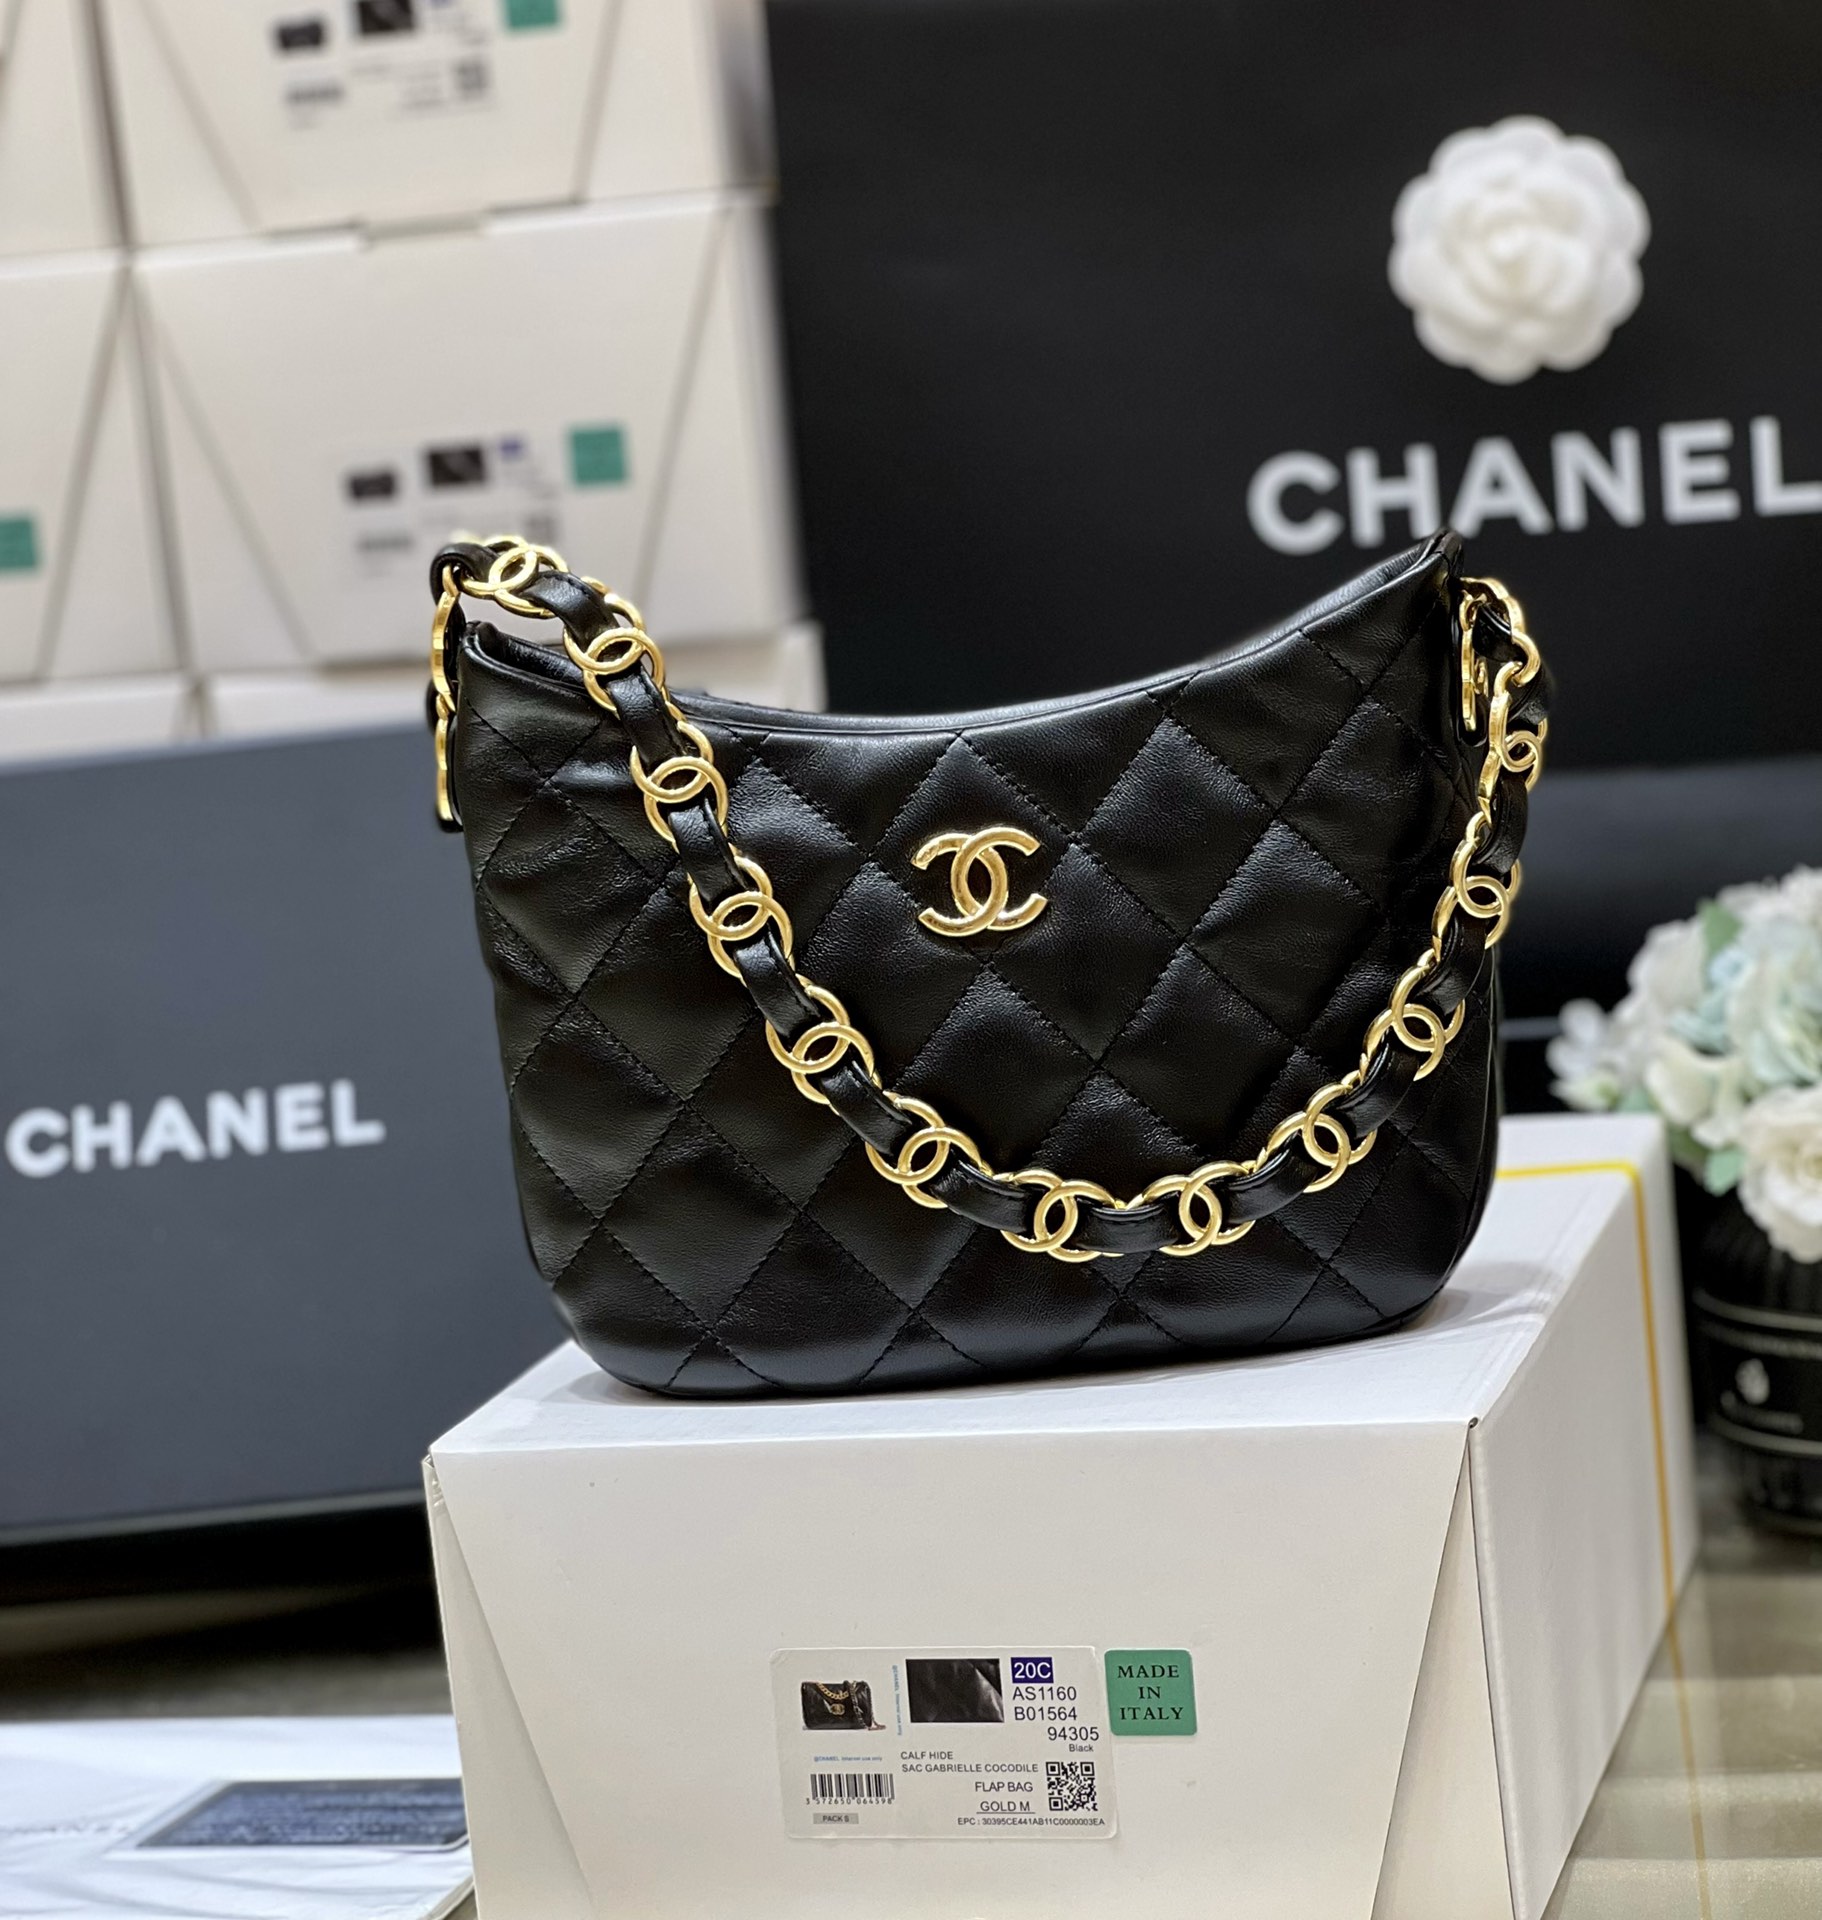 FashionReps | The Best Quality Replica Fashion Handbags Accessories Online Chanel Hobo Bag Replica